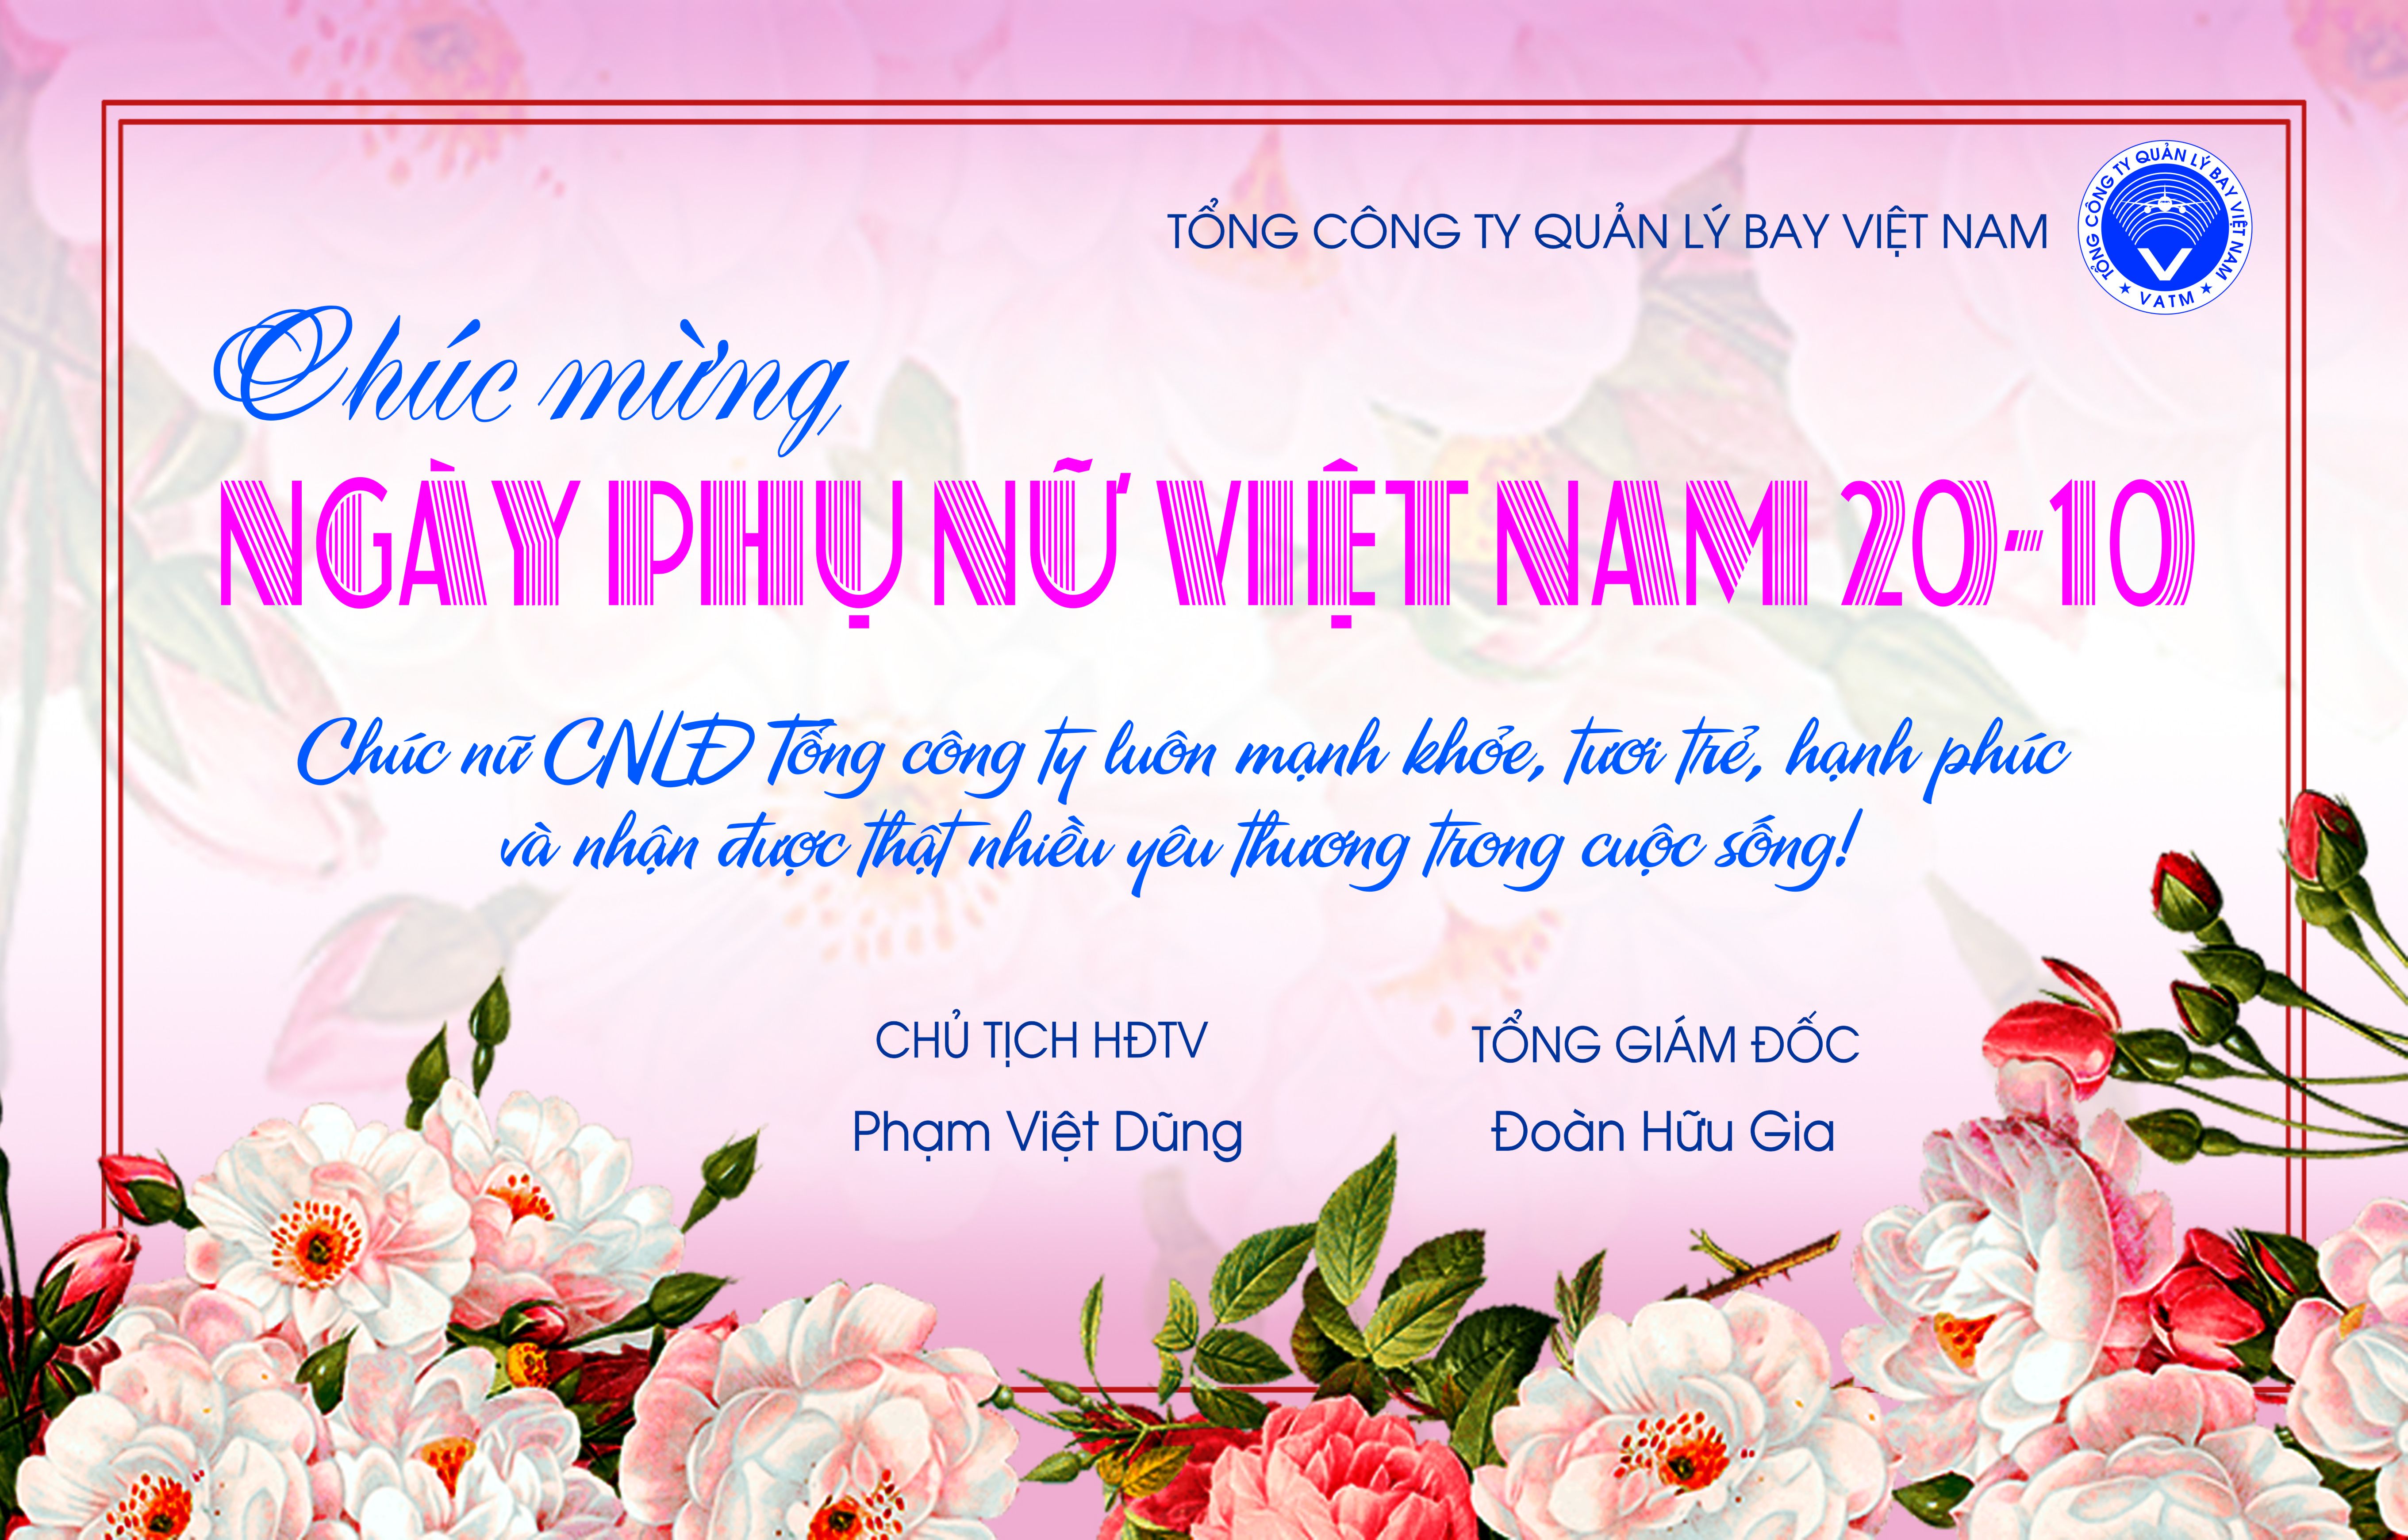 Ngày Phụ nữ Việt Nam 20/10: Chào mừng Ngày Phụ nữ Việt Nam 20/10! Hãy cùng chúc mừng và tôn vinh những người phụ nữ tuyệt vời của chúng ta. Cùng nhau xem hình ảnh về những cô gái đáng yêu, mạnh mẽ và thông minh đi kèm với lời chúc tốt đẹp nhân ngày đặc biệt này.